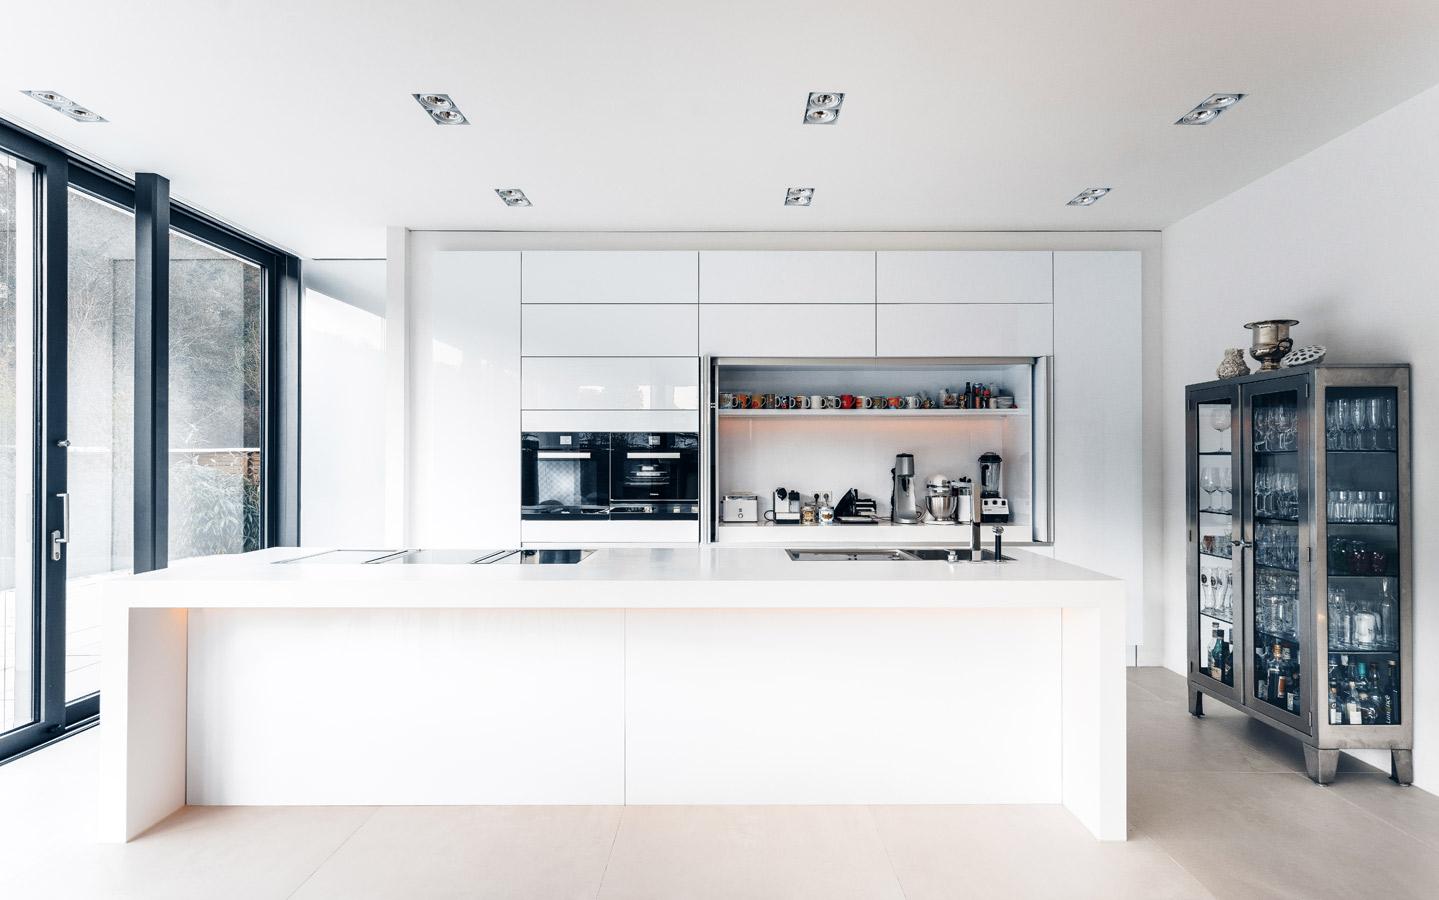 Indiviuell entworfene offene Küche #küche #bauhausstil #dunstabzugshaube #minimalistisch #offeneküche #nische #kochblock #smarthome #innenarchitektur ©jah.picture